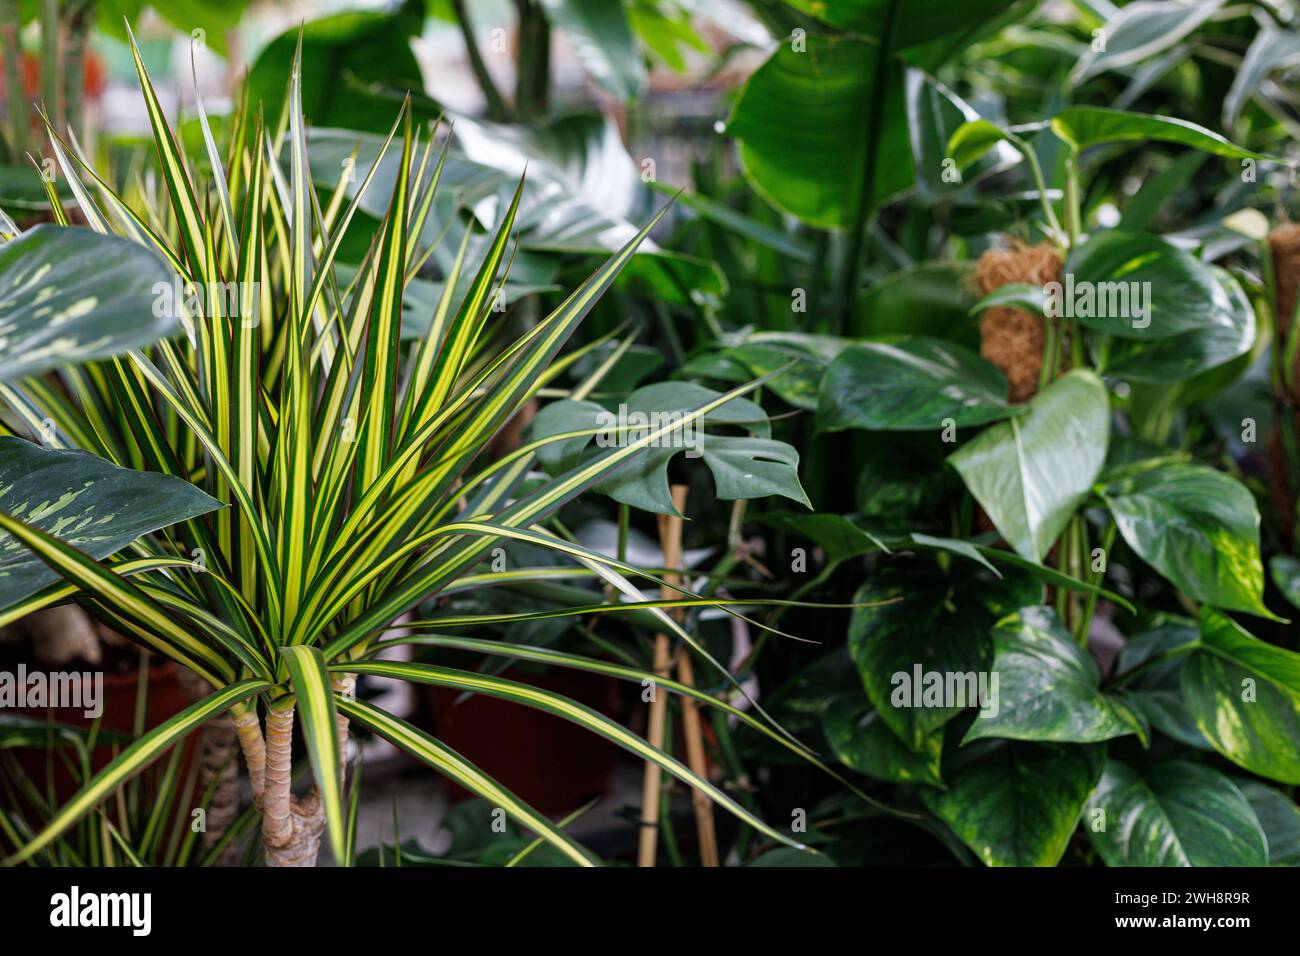 Pflanzen- und BlumenImpresonen Pflanzen- und BlumenImpresonen am 02.02.2024 in Düsseldorf. Dieses Foto zeigt eine blühende Sammlung Beliebter Zimmerpflanzen, die einen lebendigen und grünen Dschungel im Haus bilden. DAS Bild zeigt ikonische Arten wie die unverwüstliche Schlangenpflanze, die pflegeleichte ZZ-Pflanze, den bunten Philodendron, die ikonische Monstera deliciosa mit ihren gespaltenen Blättern und die elegante Fiddle Leaf Fig. Die unterschiedlichen Texturen, Formen und Größen des Laubes schaffen eine visuell interessante Komposition und machen dieses Bild zu einer perfekten Illus Banque D'Images